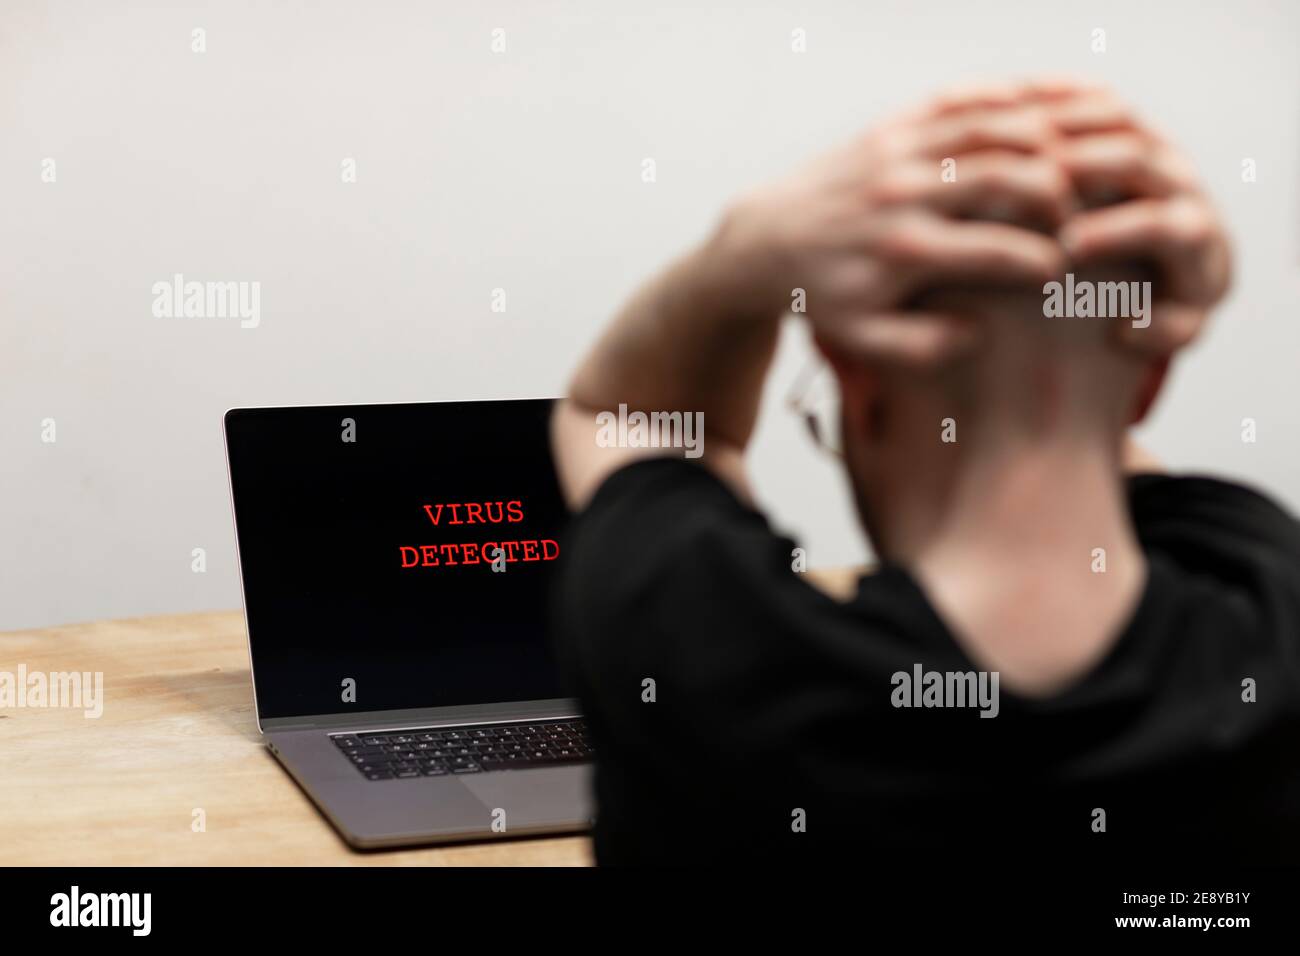 Auf einem Laptop wurde ein Virus entdeckt. Ein verzweifelter Mann, der seinen Computer mit der Warnung auf seinem Bildschirm betrachtet. Cyberkriminalität, infiziertes unsicheres Gerät Stockfoto